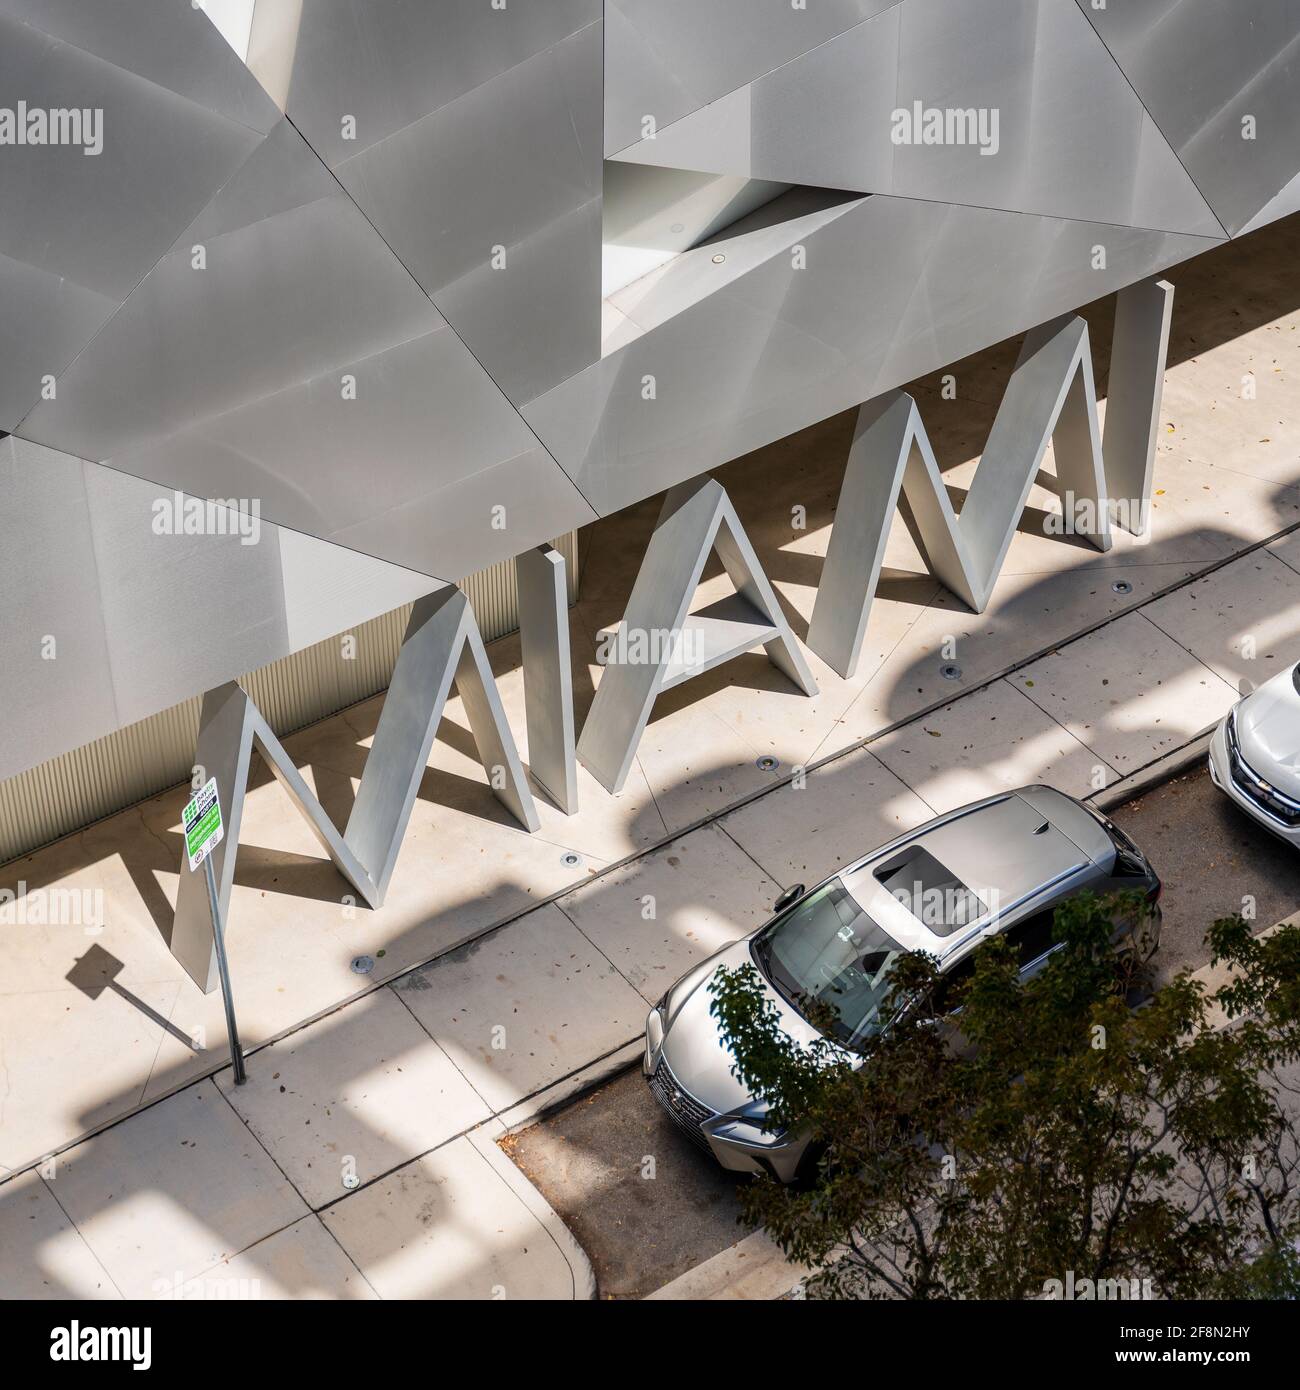 Miami signalisation dans de grandes lettres métalliques à l'Institut d'art contemporain, Floride, États-Unis Banque D'Images